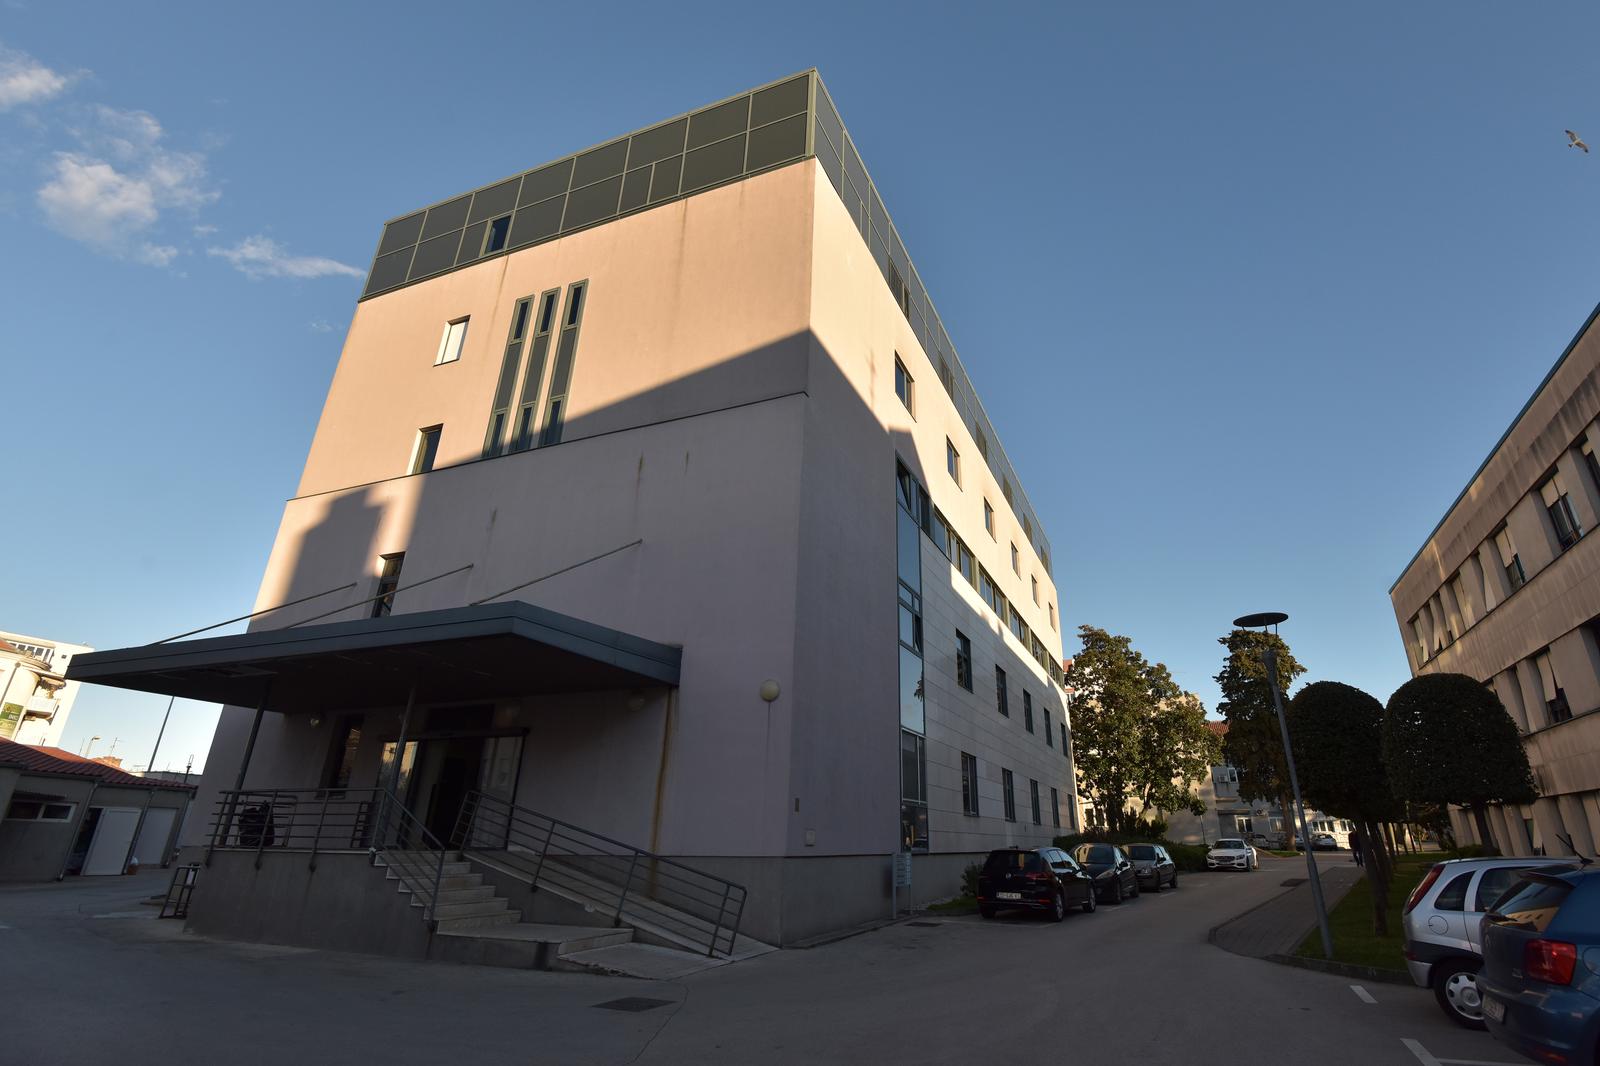 28.02.2020., Zadar - U Opcoj bolnici Zadar do daljnjega su zabranjene posjete na svim odjelima. Zabrana je donesena kao mjera predostroznosti zbog gripe i koronavirusa. Photo: Dino Stanin/PIXSELL